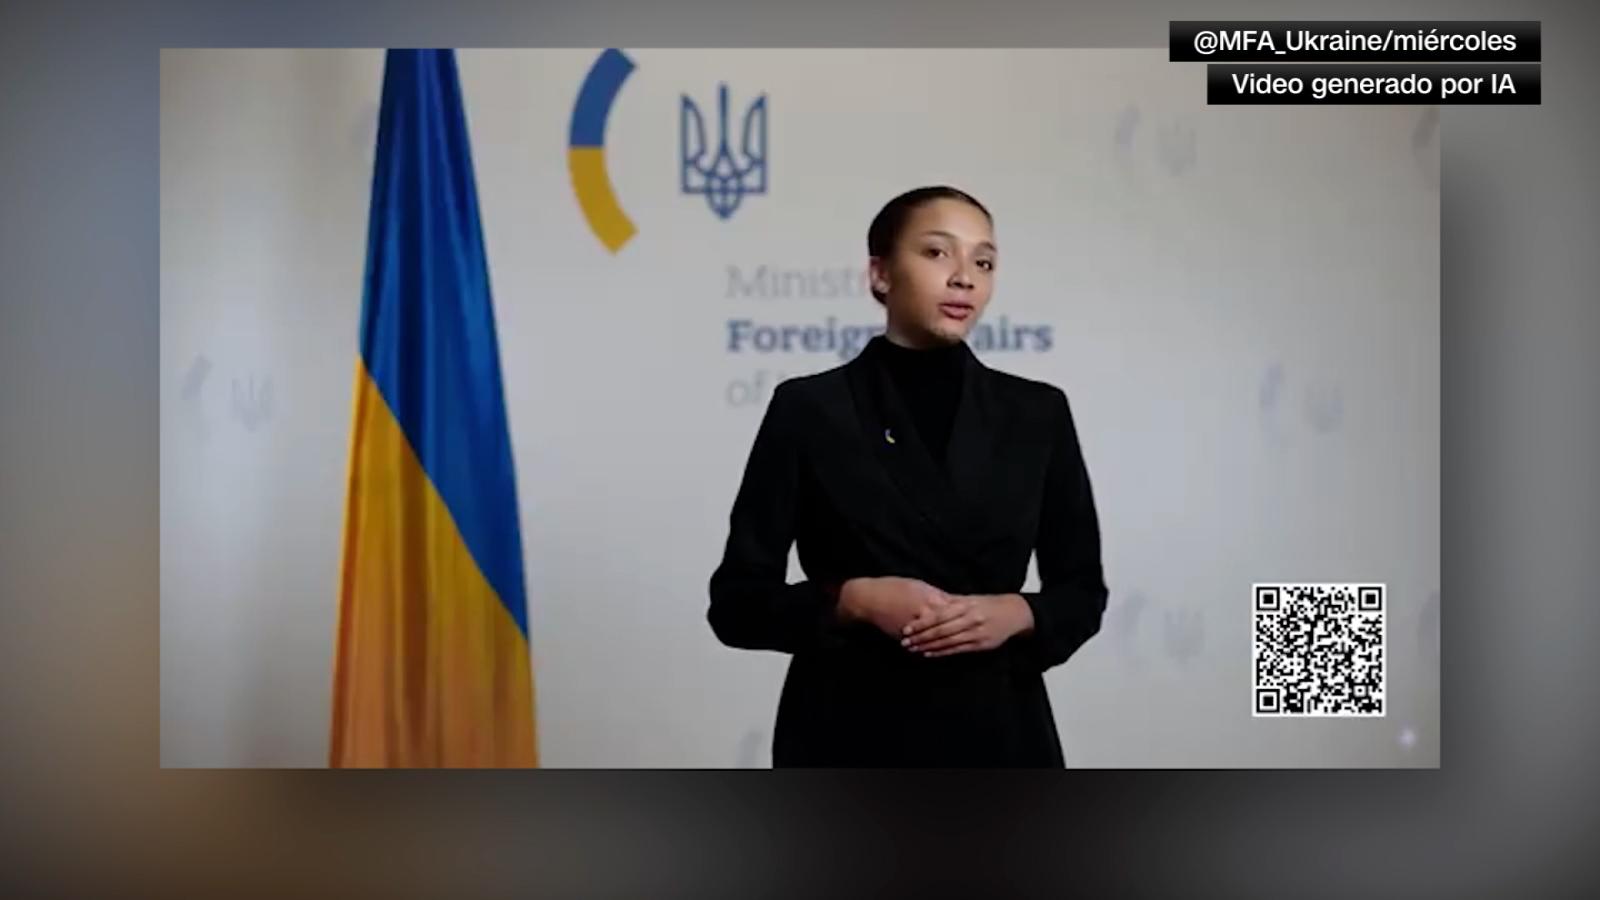 Ucrania crea una nueva portavoz diplomatica con IA | Video